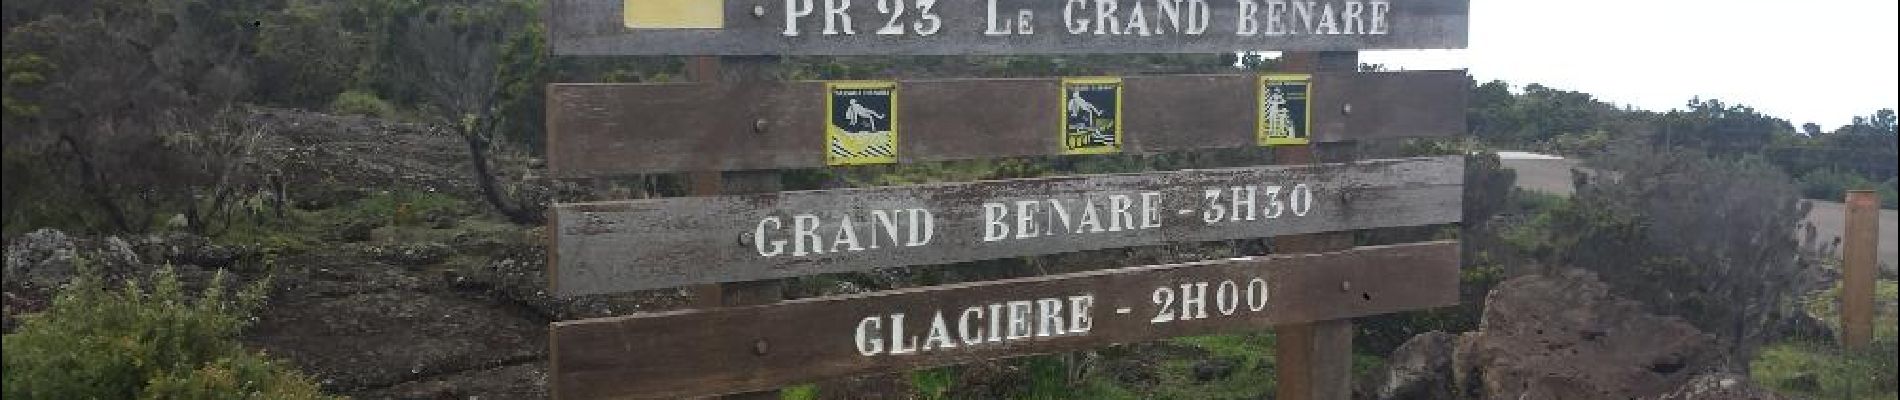 Randonnée Marche Saint-Paul - Maido - Grand Benare - Glacière - Photo